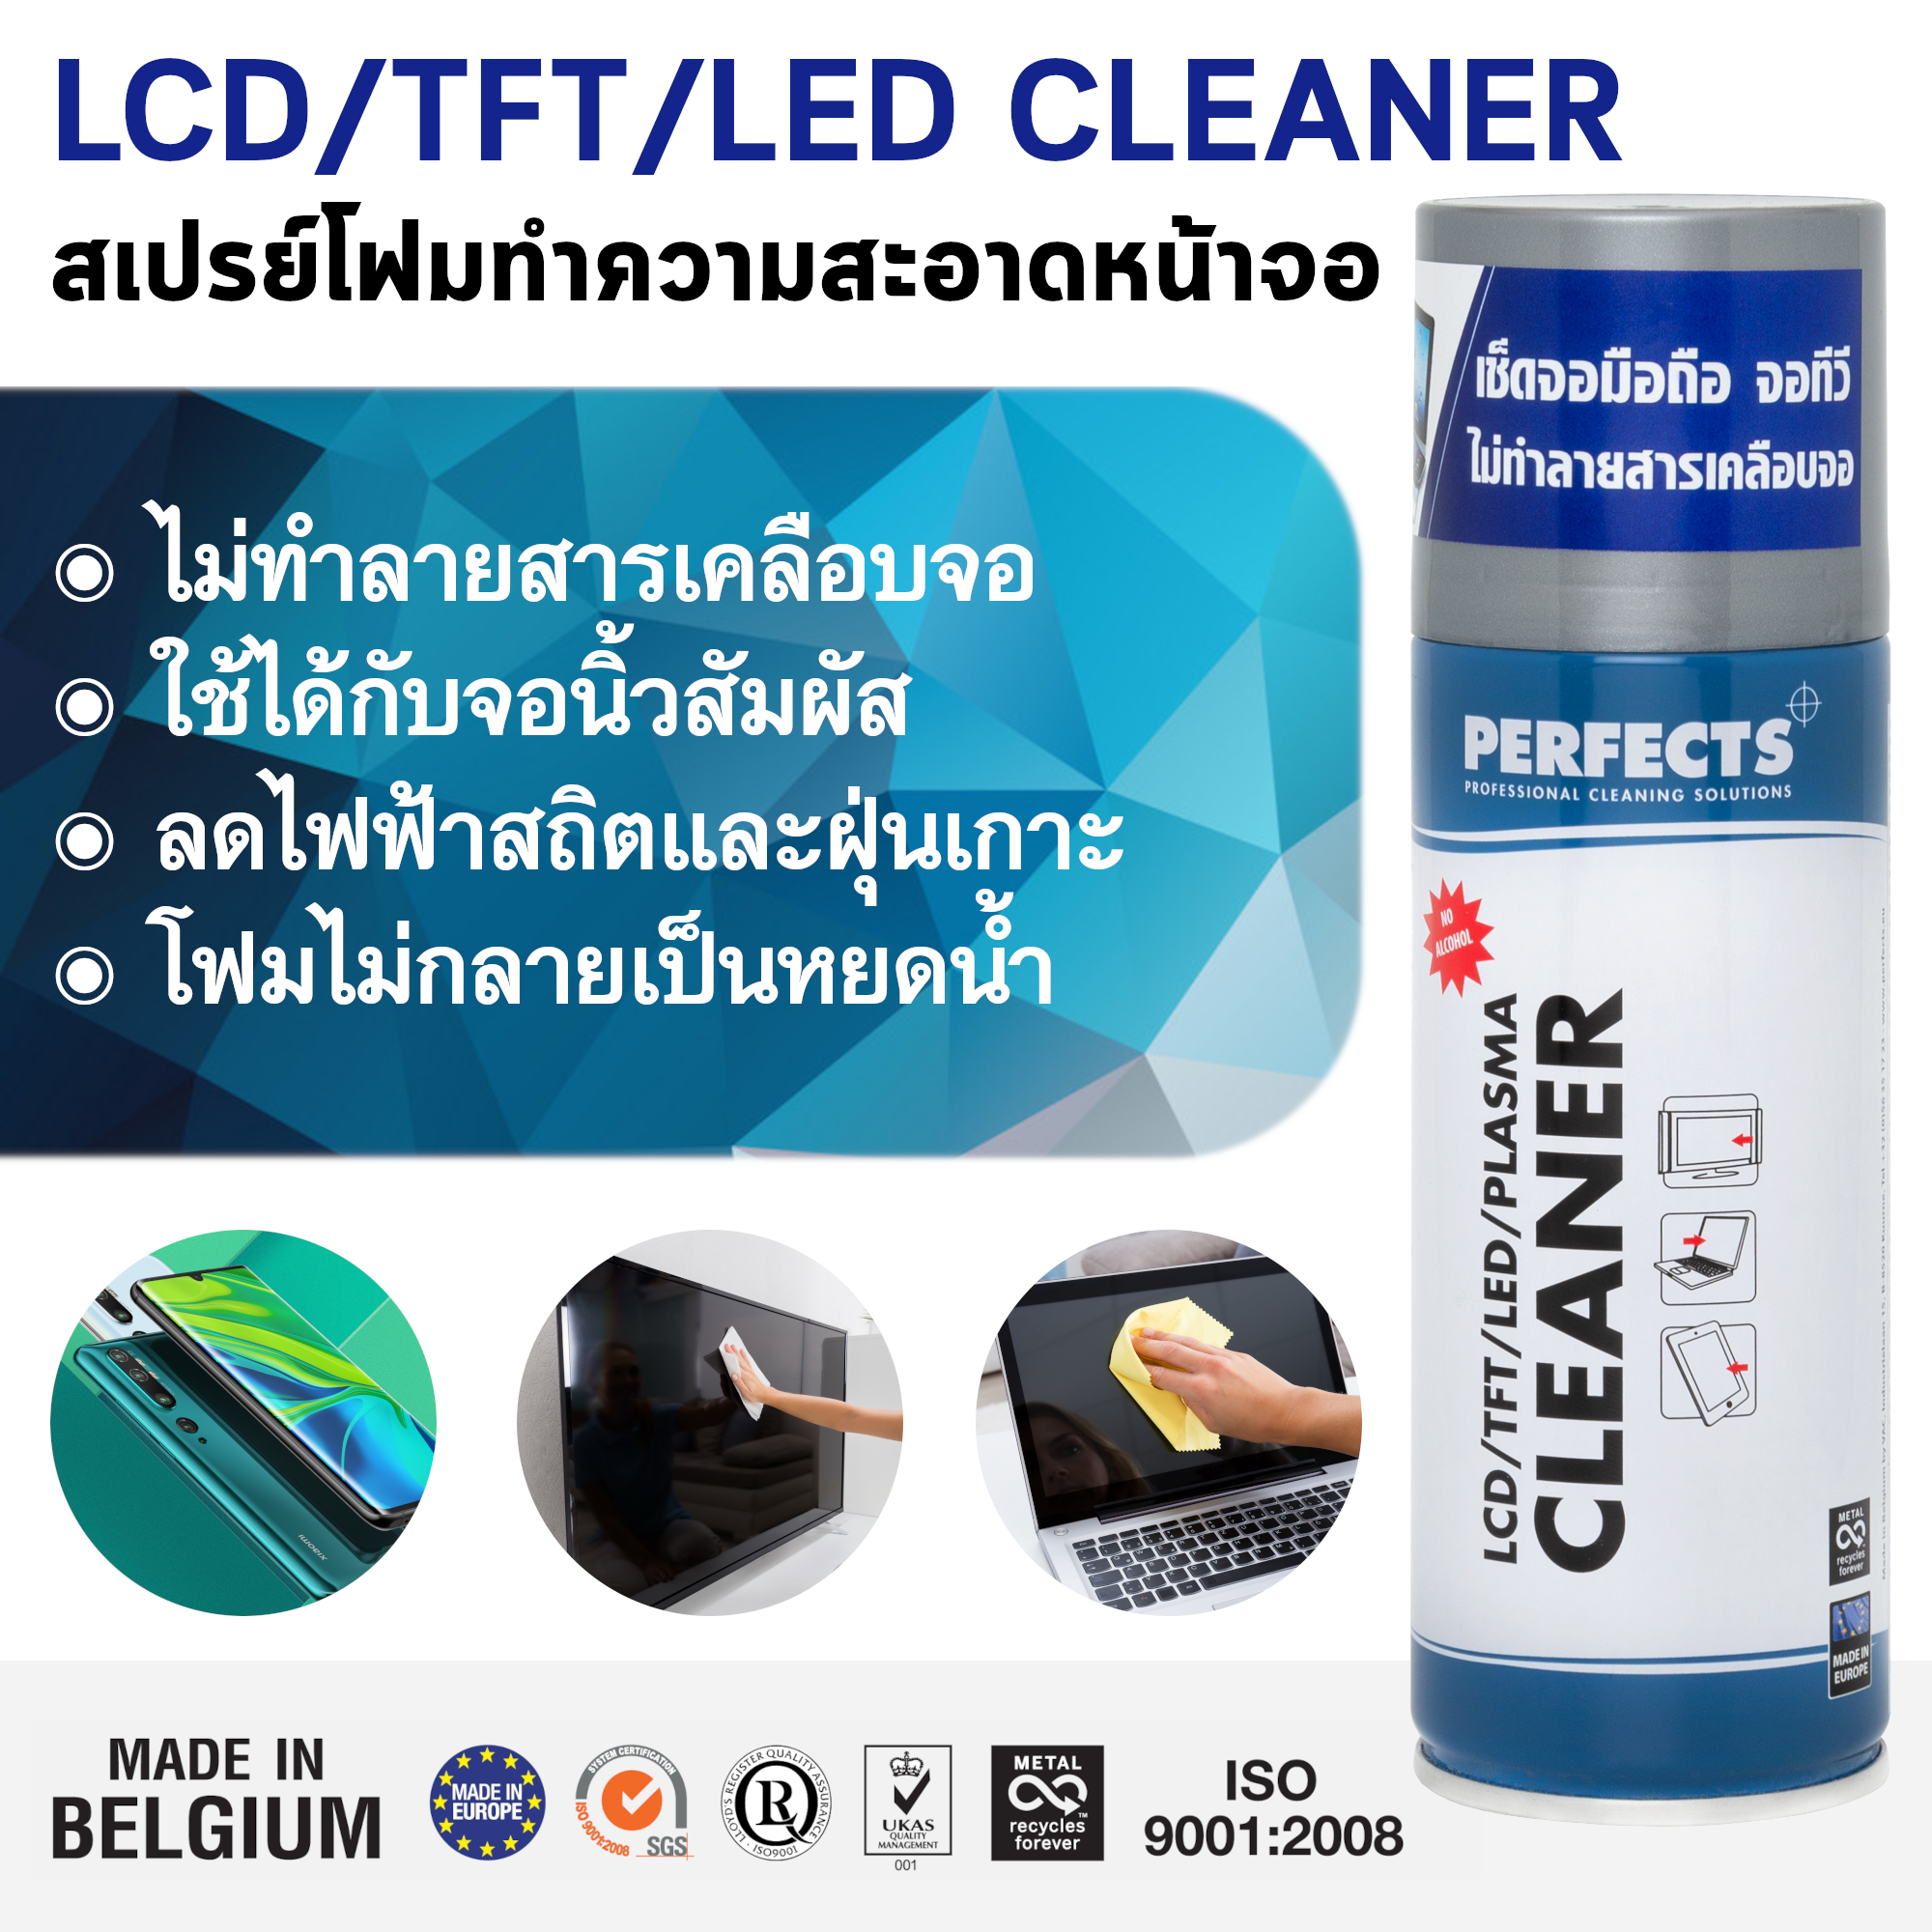 LCD/TFT/LED CLEANER